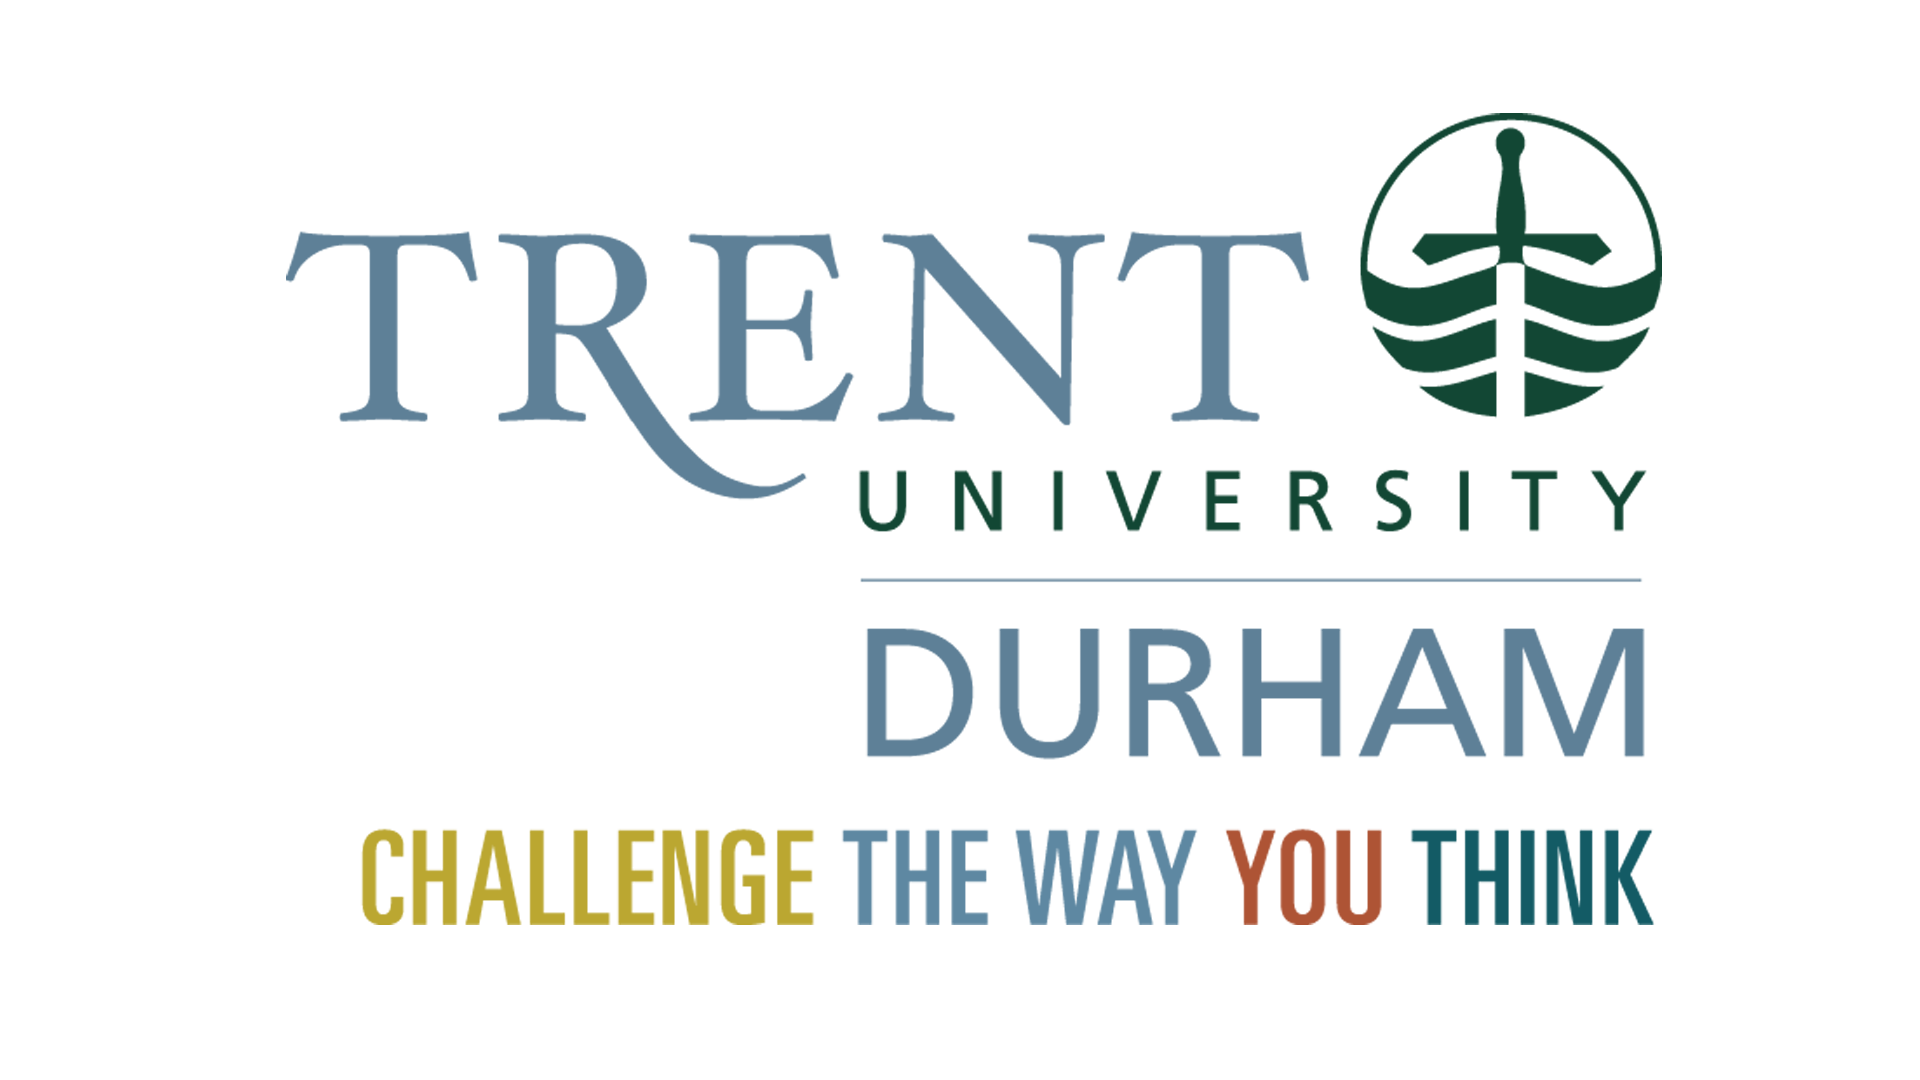 Trent University